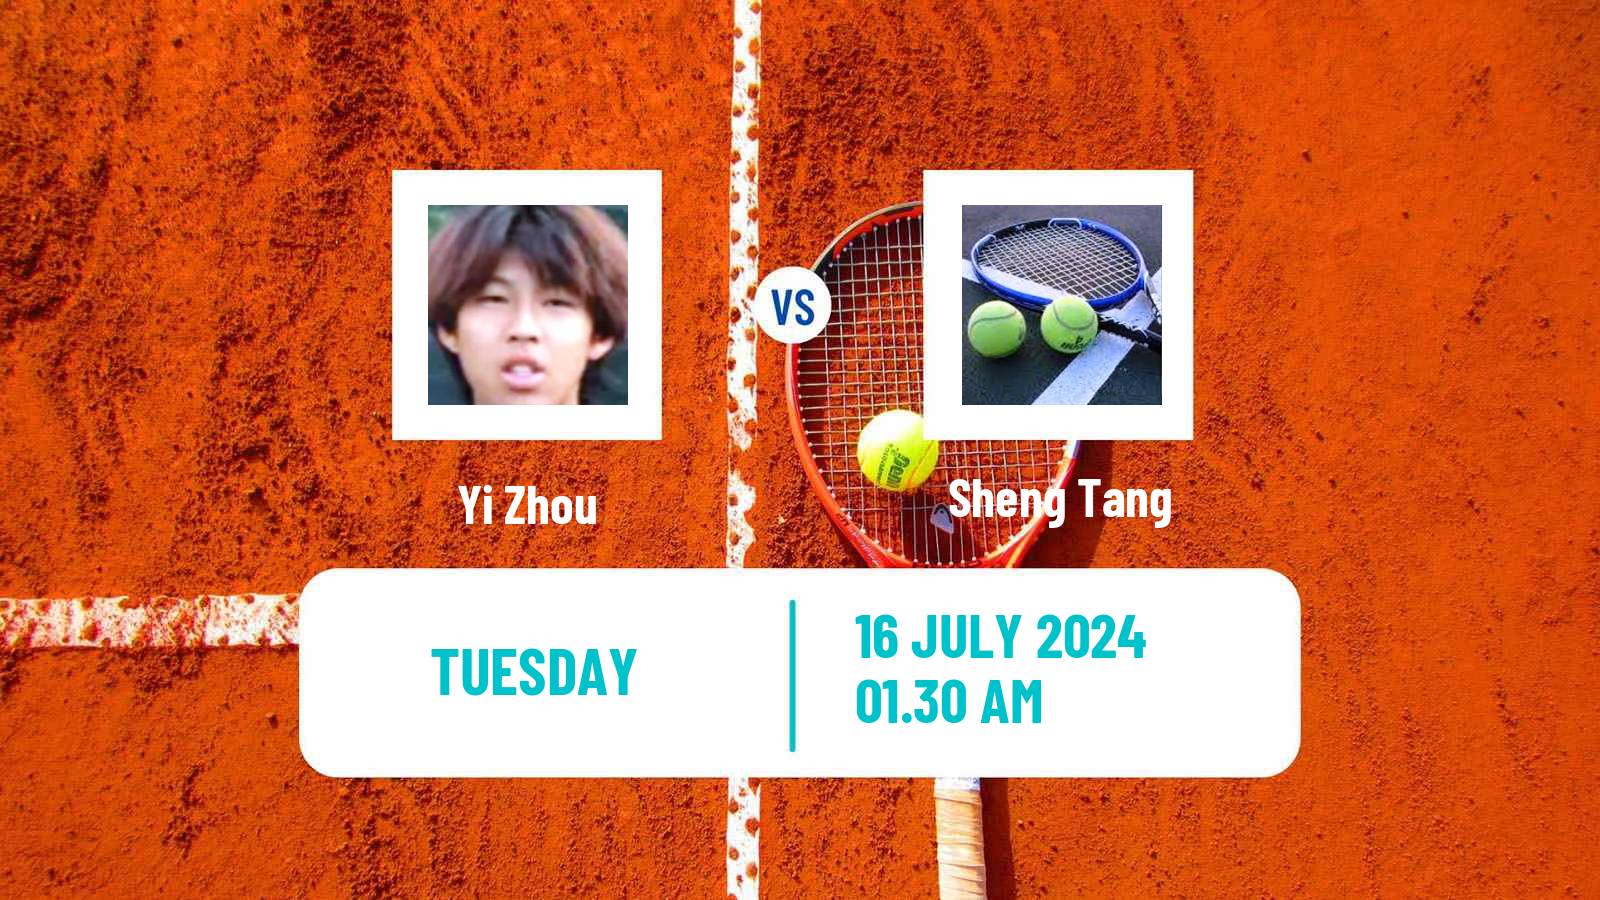 Tennis ITF M25 Tianjin 2 Men Yi Zhou - Sheng Tang